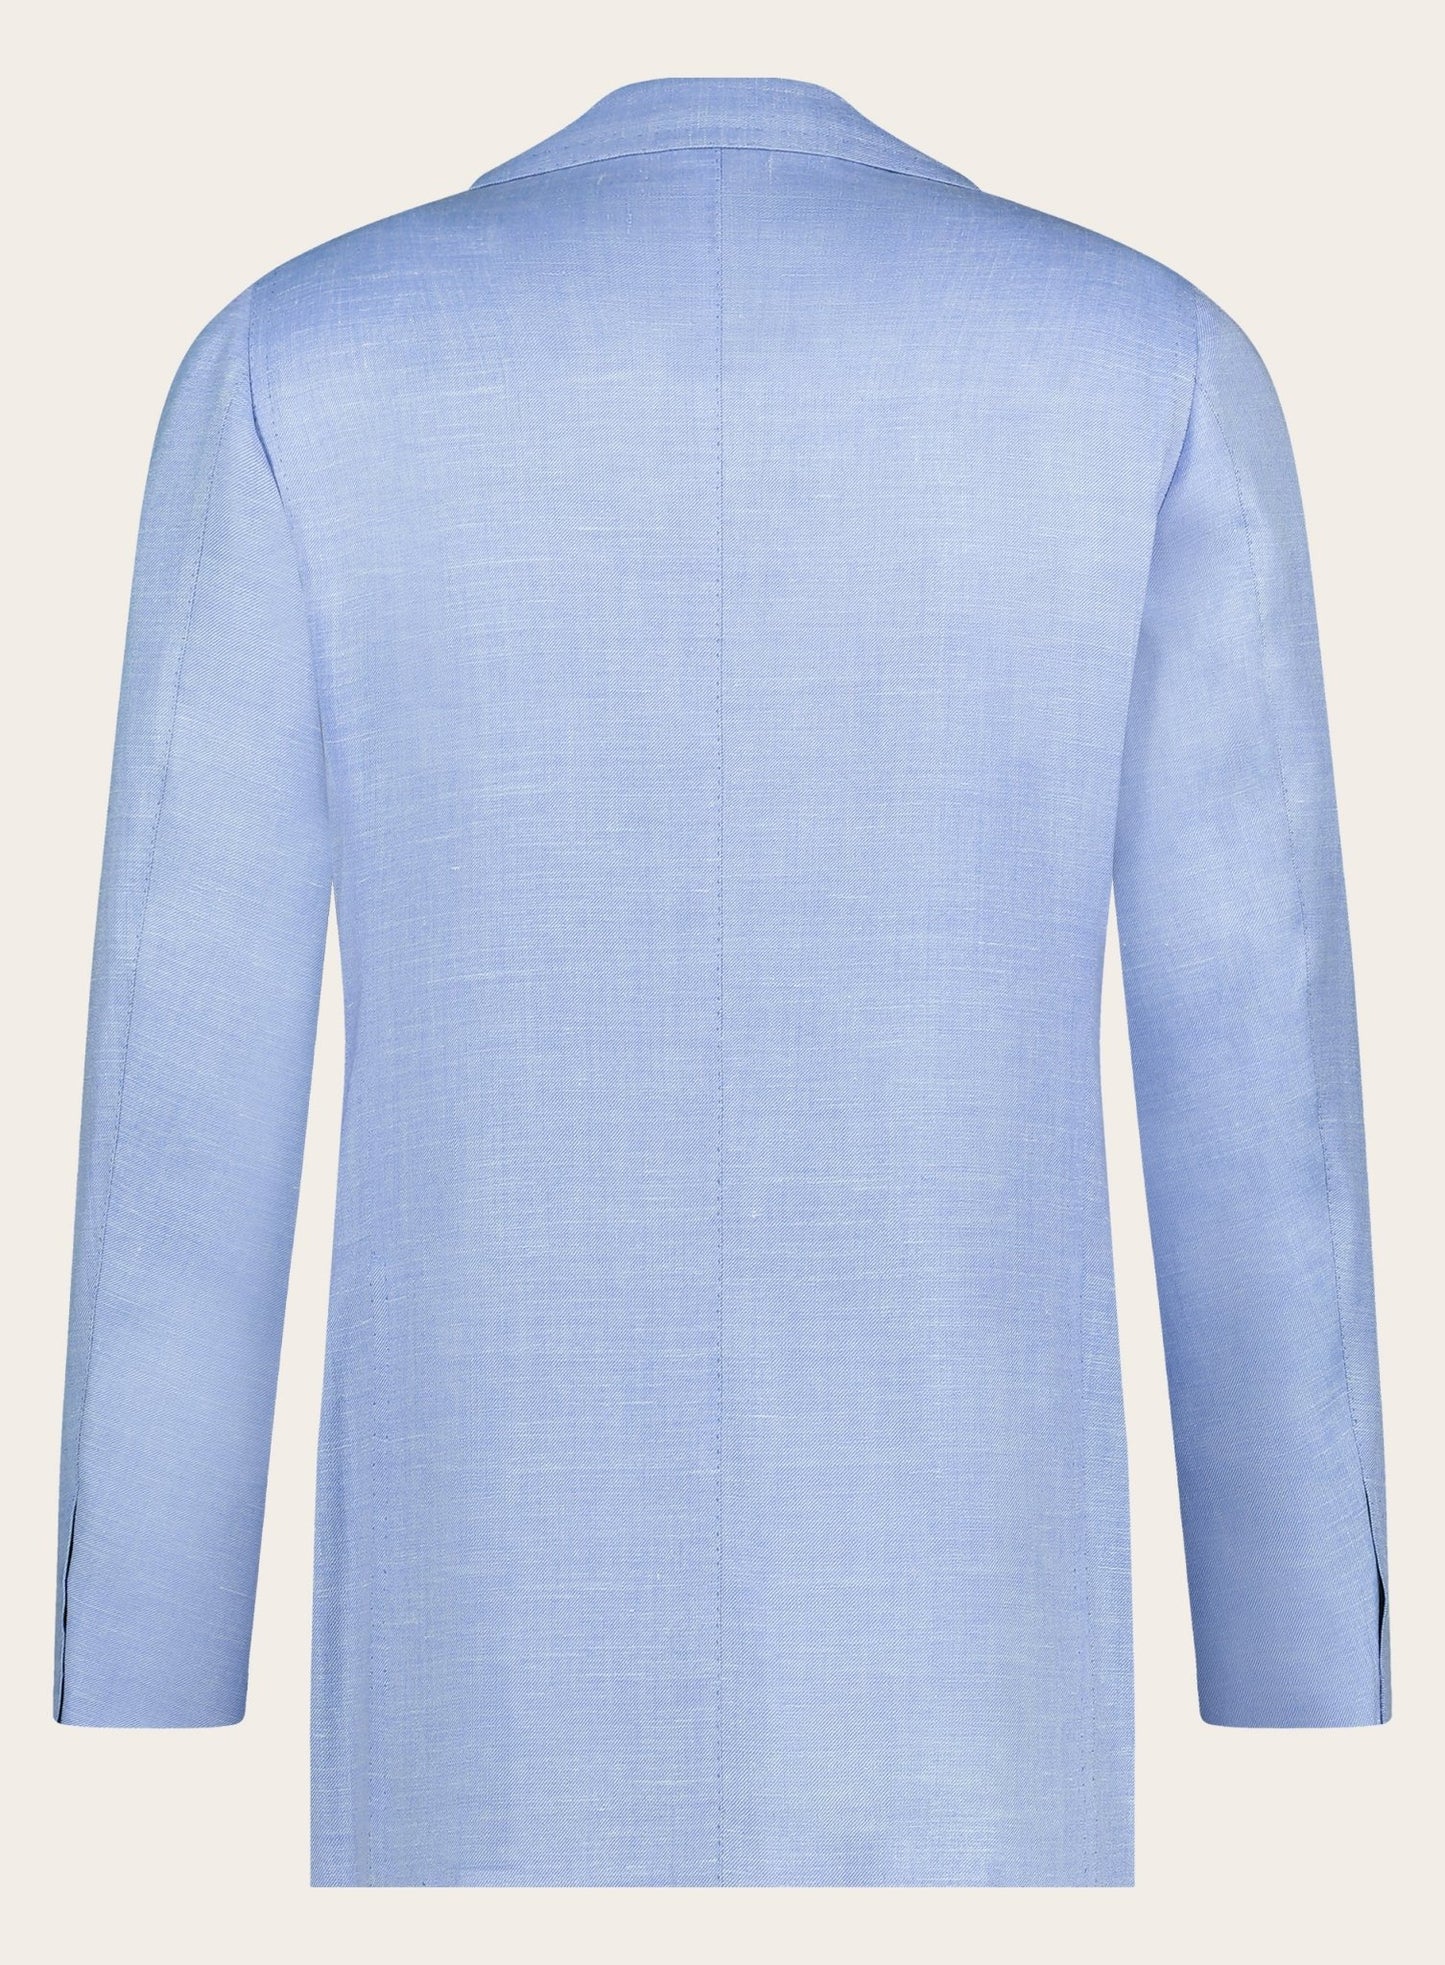 Handgemaakt jasje van cashmere en zijde | L.Blauw